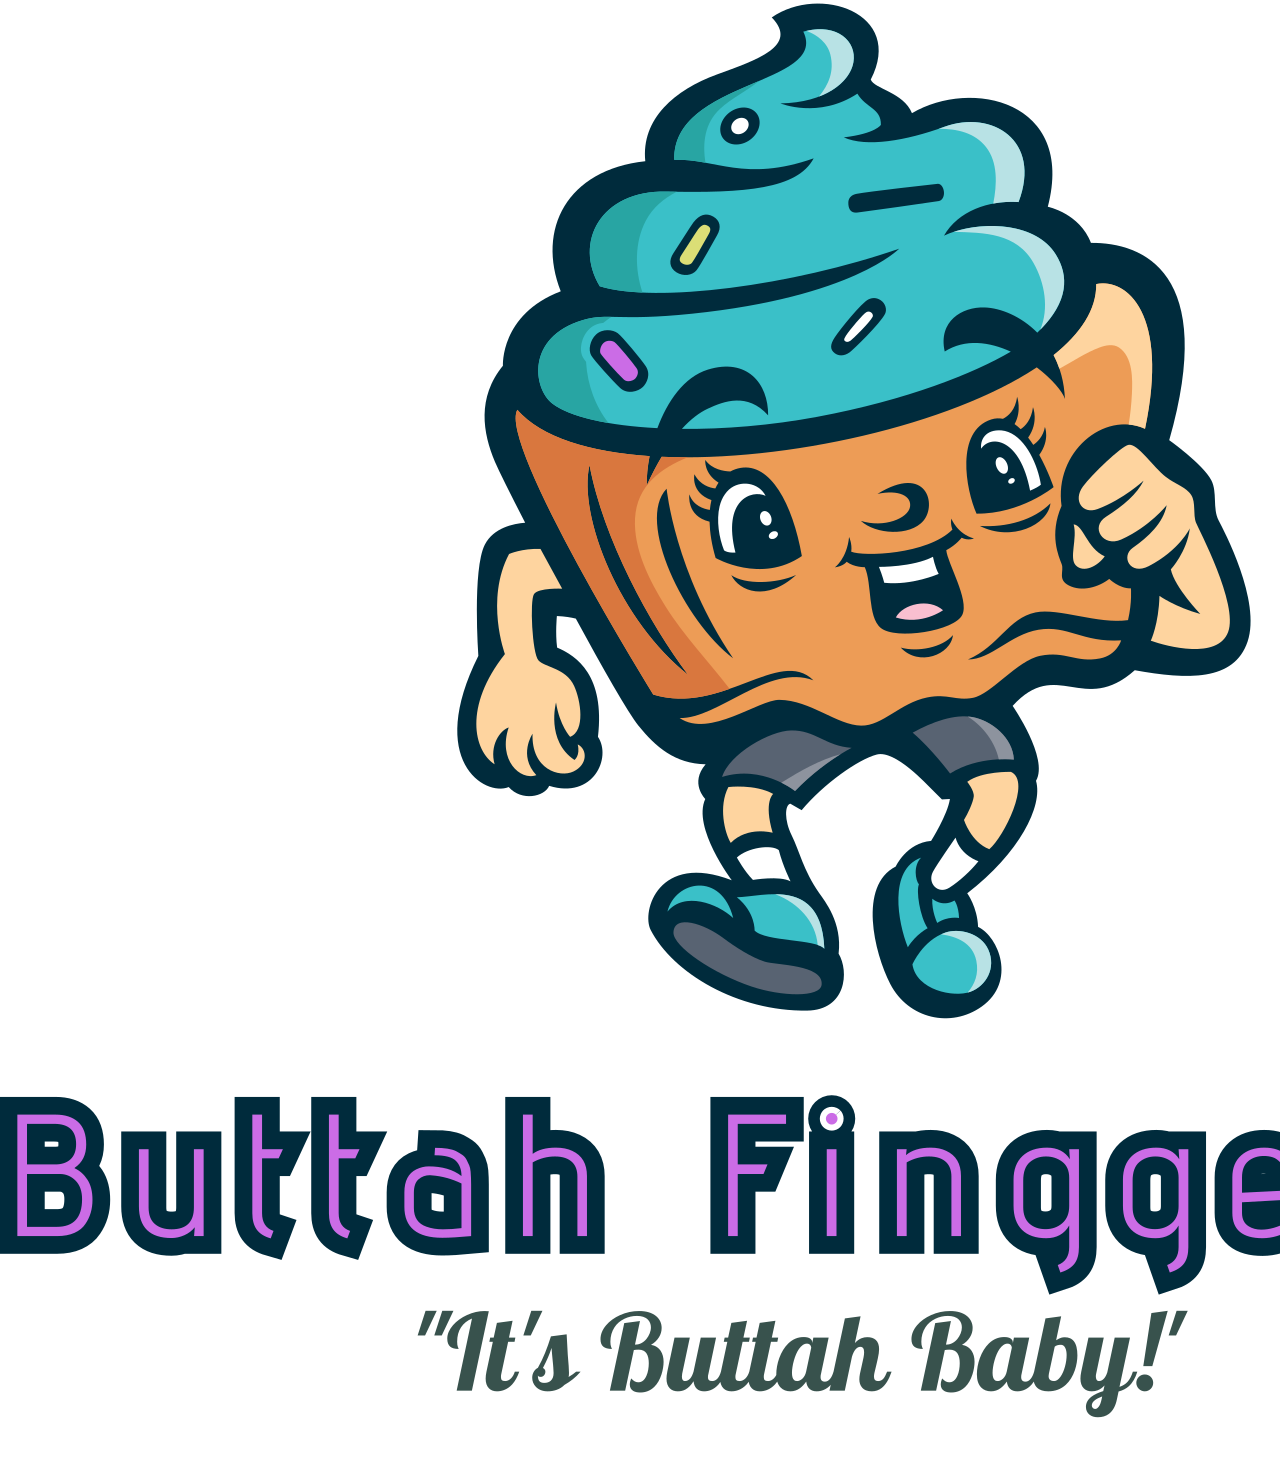 Buttah Finggers's web page